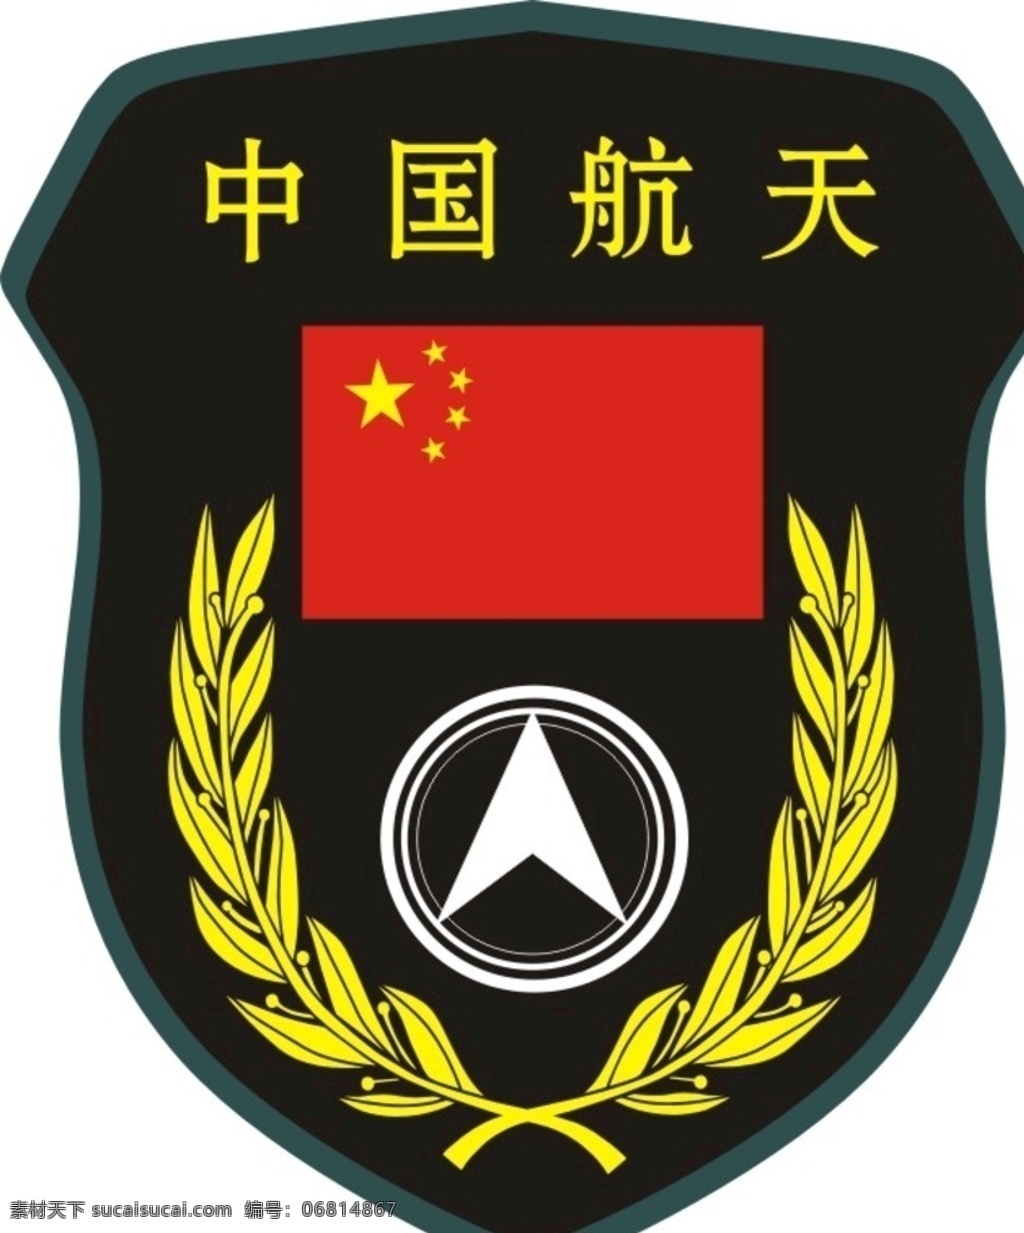 中国航天臂章 中国航天 中国 航天 臂章 五星红旗 标志图标 其他图标